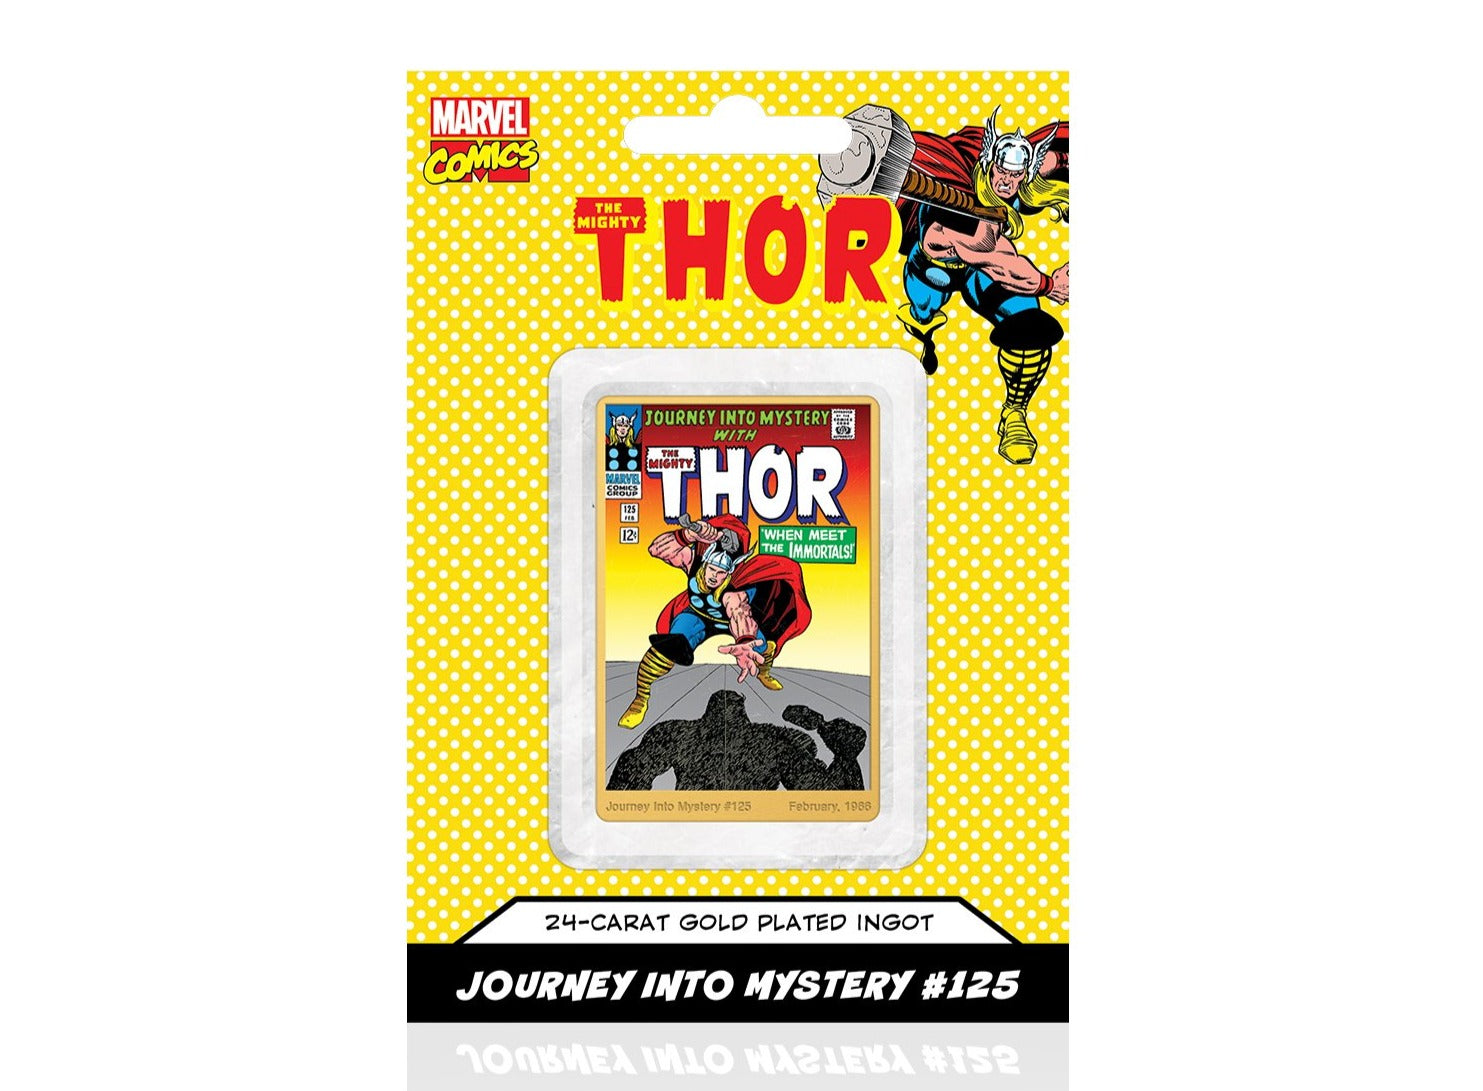 Marvel Comics Thor, Lingote bañado en Oro 24 Quilates - 'When Meet The Immortals' #125